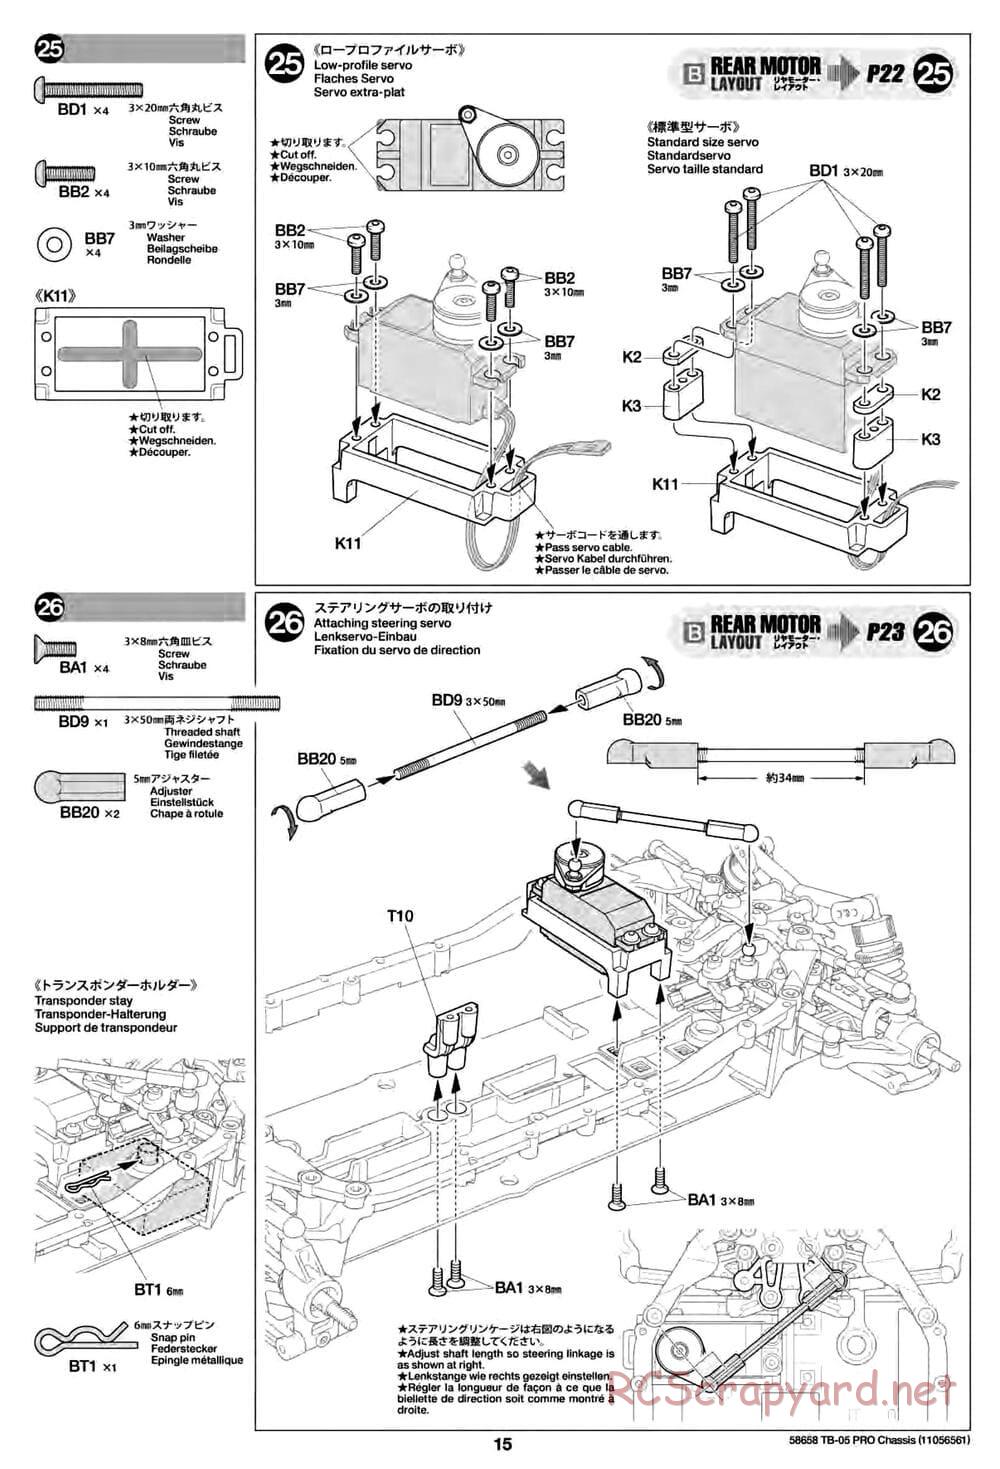 Tamiya - TB-05 Pro Chassis - Manual - Page 15